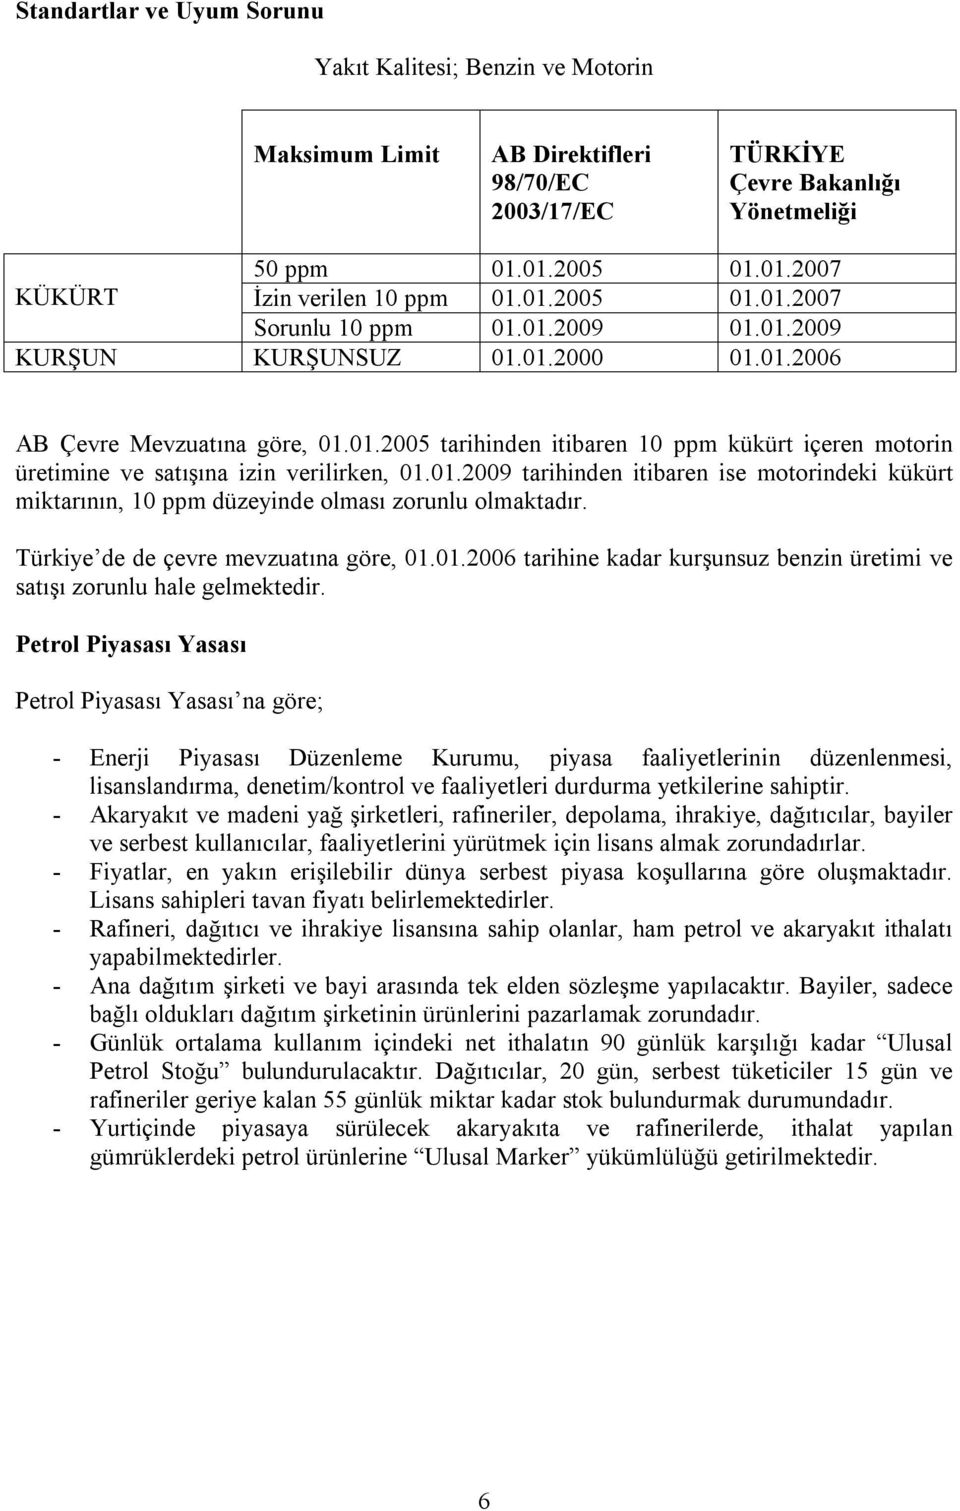 01.2009 tarihinden itibaren ise motorindeki kükürt miktarının, 10 ppm düzeyinde olması zorunlu olmaktadır. Türkiye de de çevre mevzuatına göre, 01.01.2006 tarihine kadar kurşunsuz benzin üretimi ve satışı zorunlu hale gelmektedir.